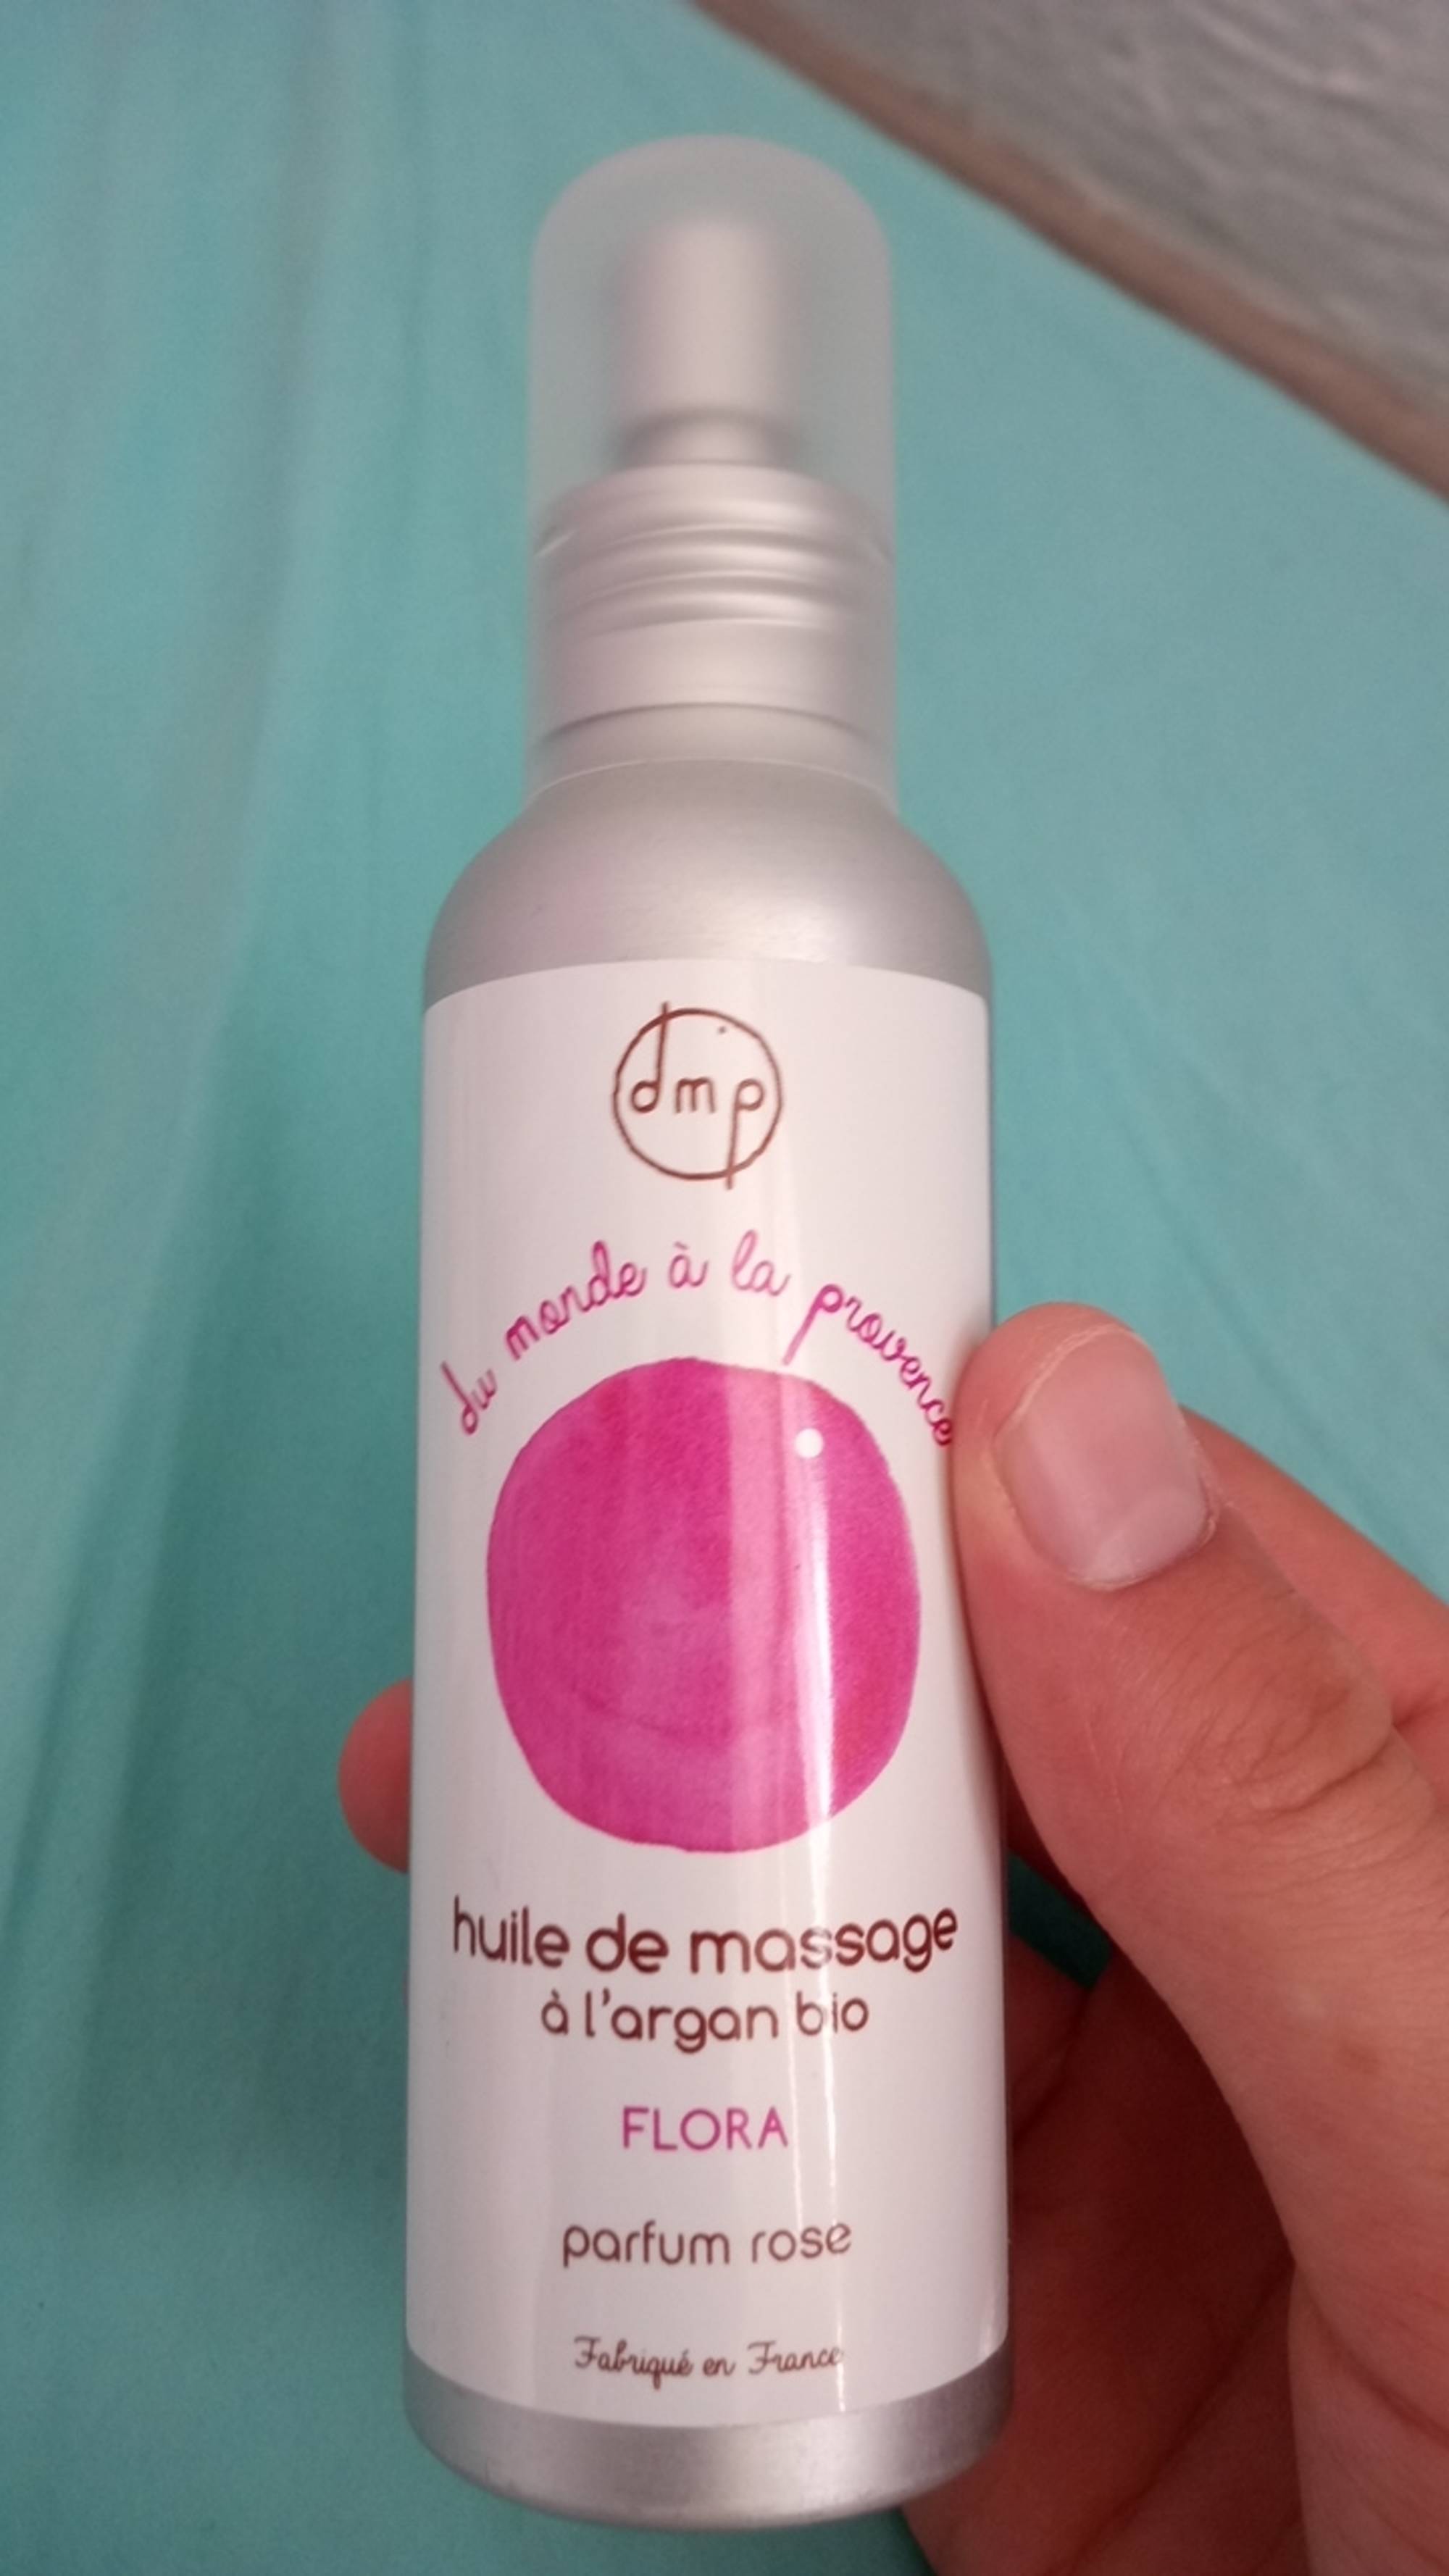 DMP - Huile de massage à l'argan bio parfum rose